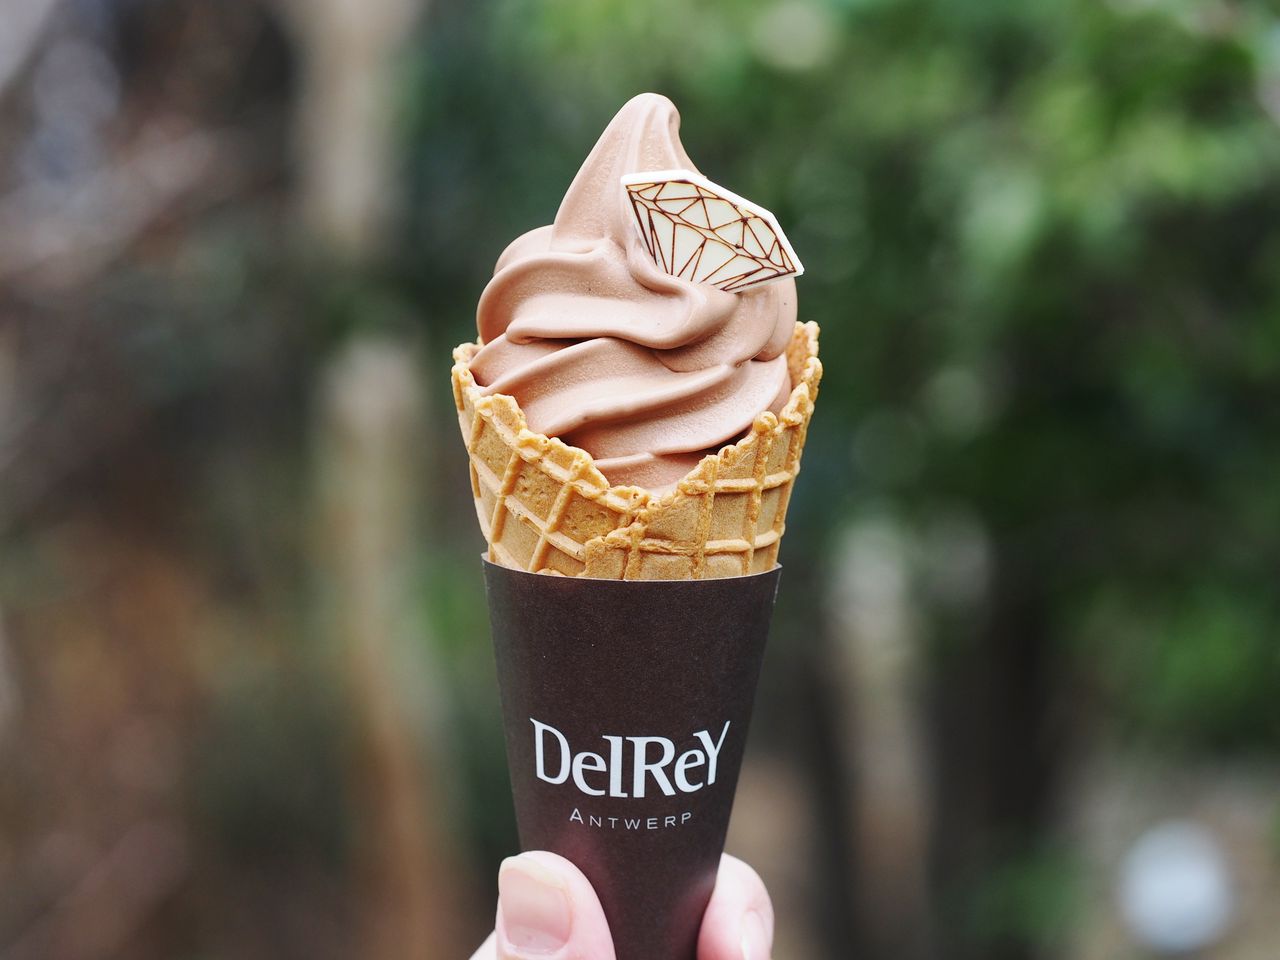 ベルギーのチョコレートブランドdelrey デルレイ のソフトクリームが関西初上陸 スイーツハンター月ウサギの食べ日記